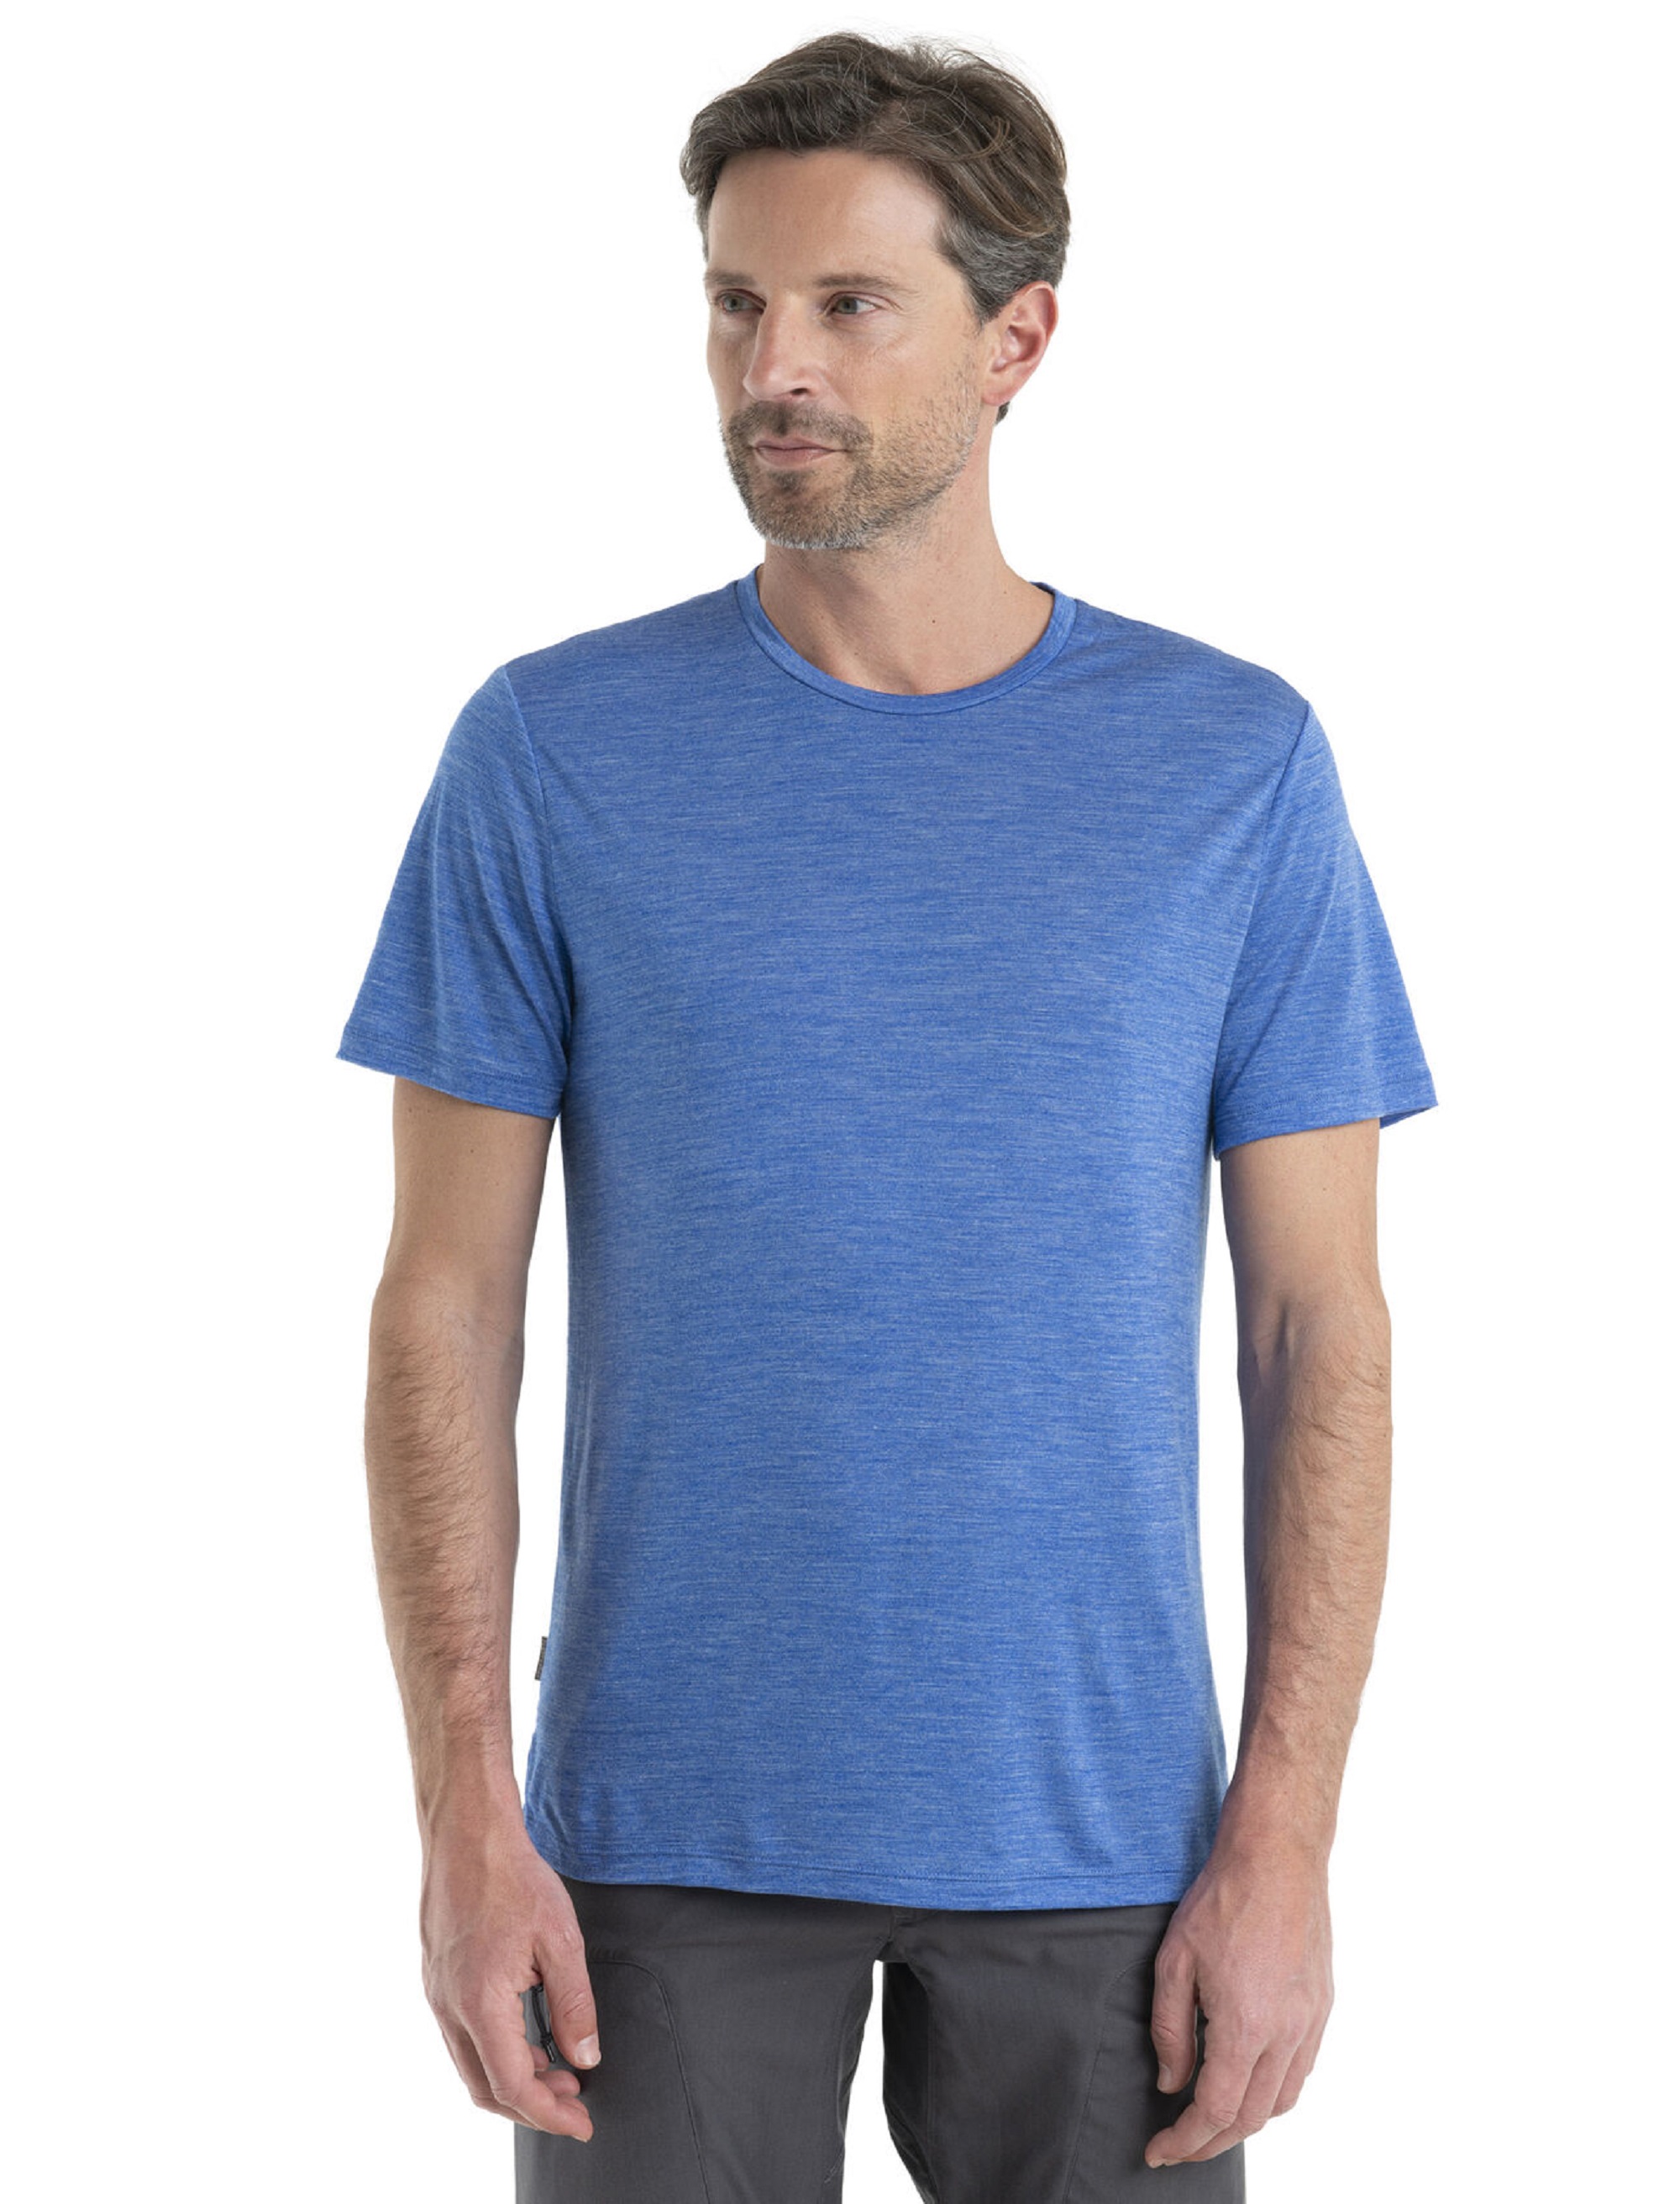 Man wearing a blue Icebreaker Sphere II T-shirt